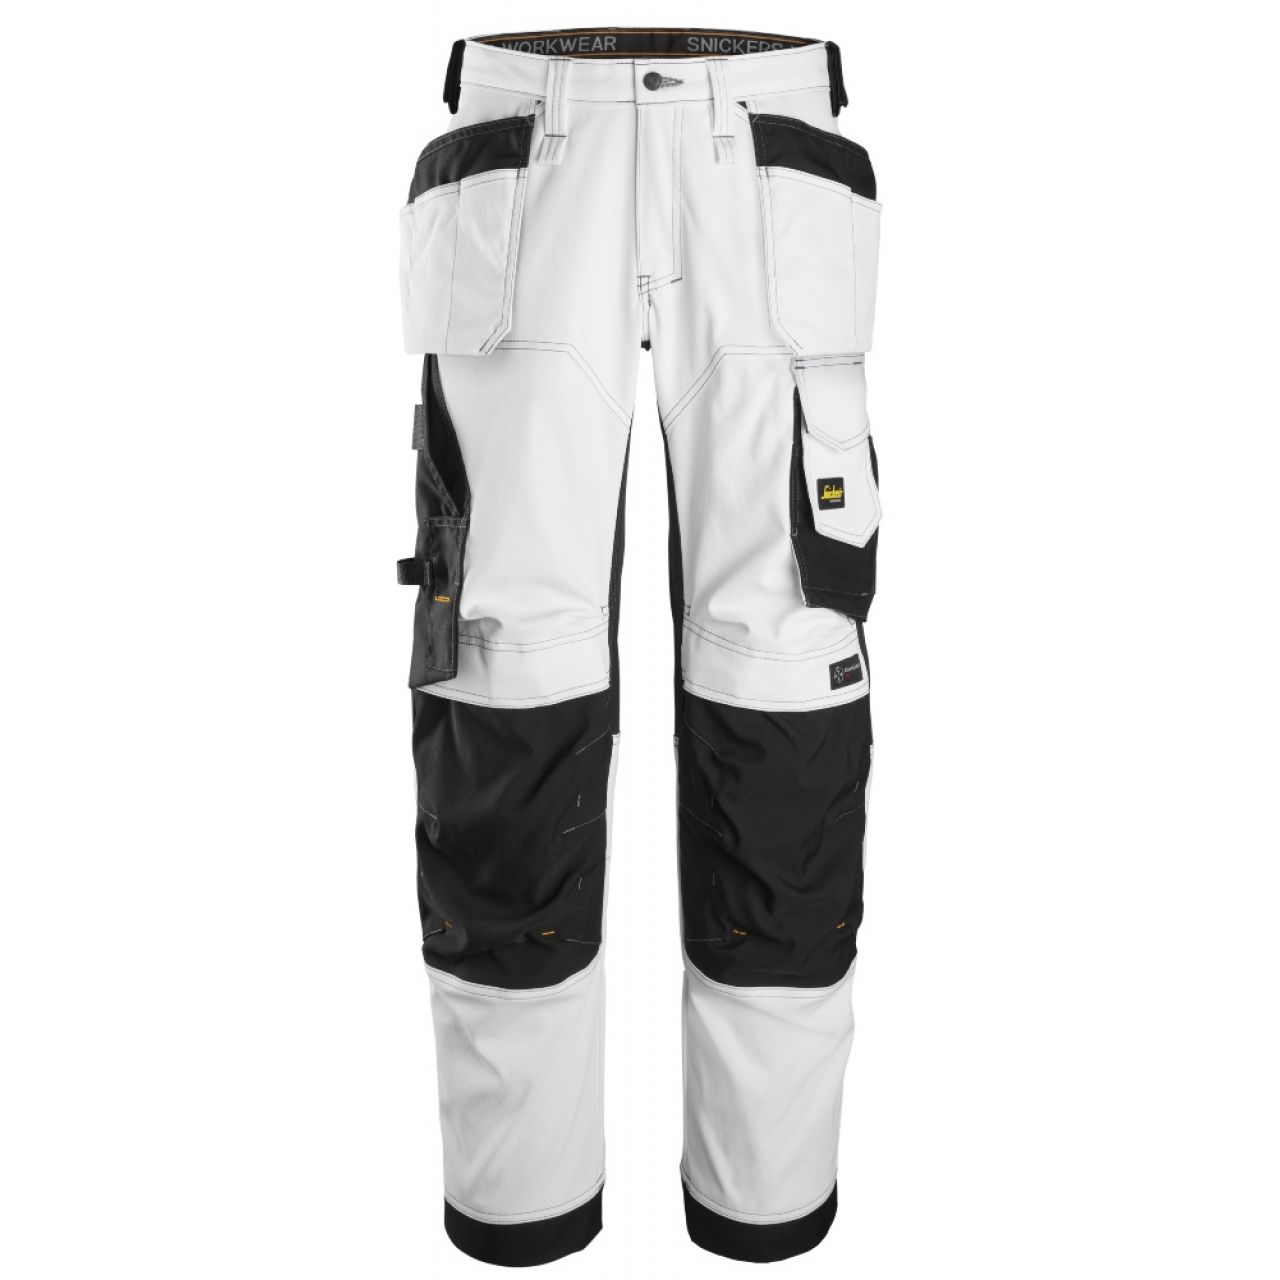 6251 Pantalones largos de trabajo elásticos de ajuste holgado con bolsillos flotantes AllroundWork blanco-negro talla 50